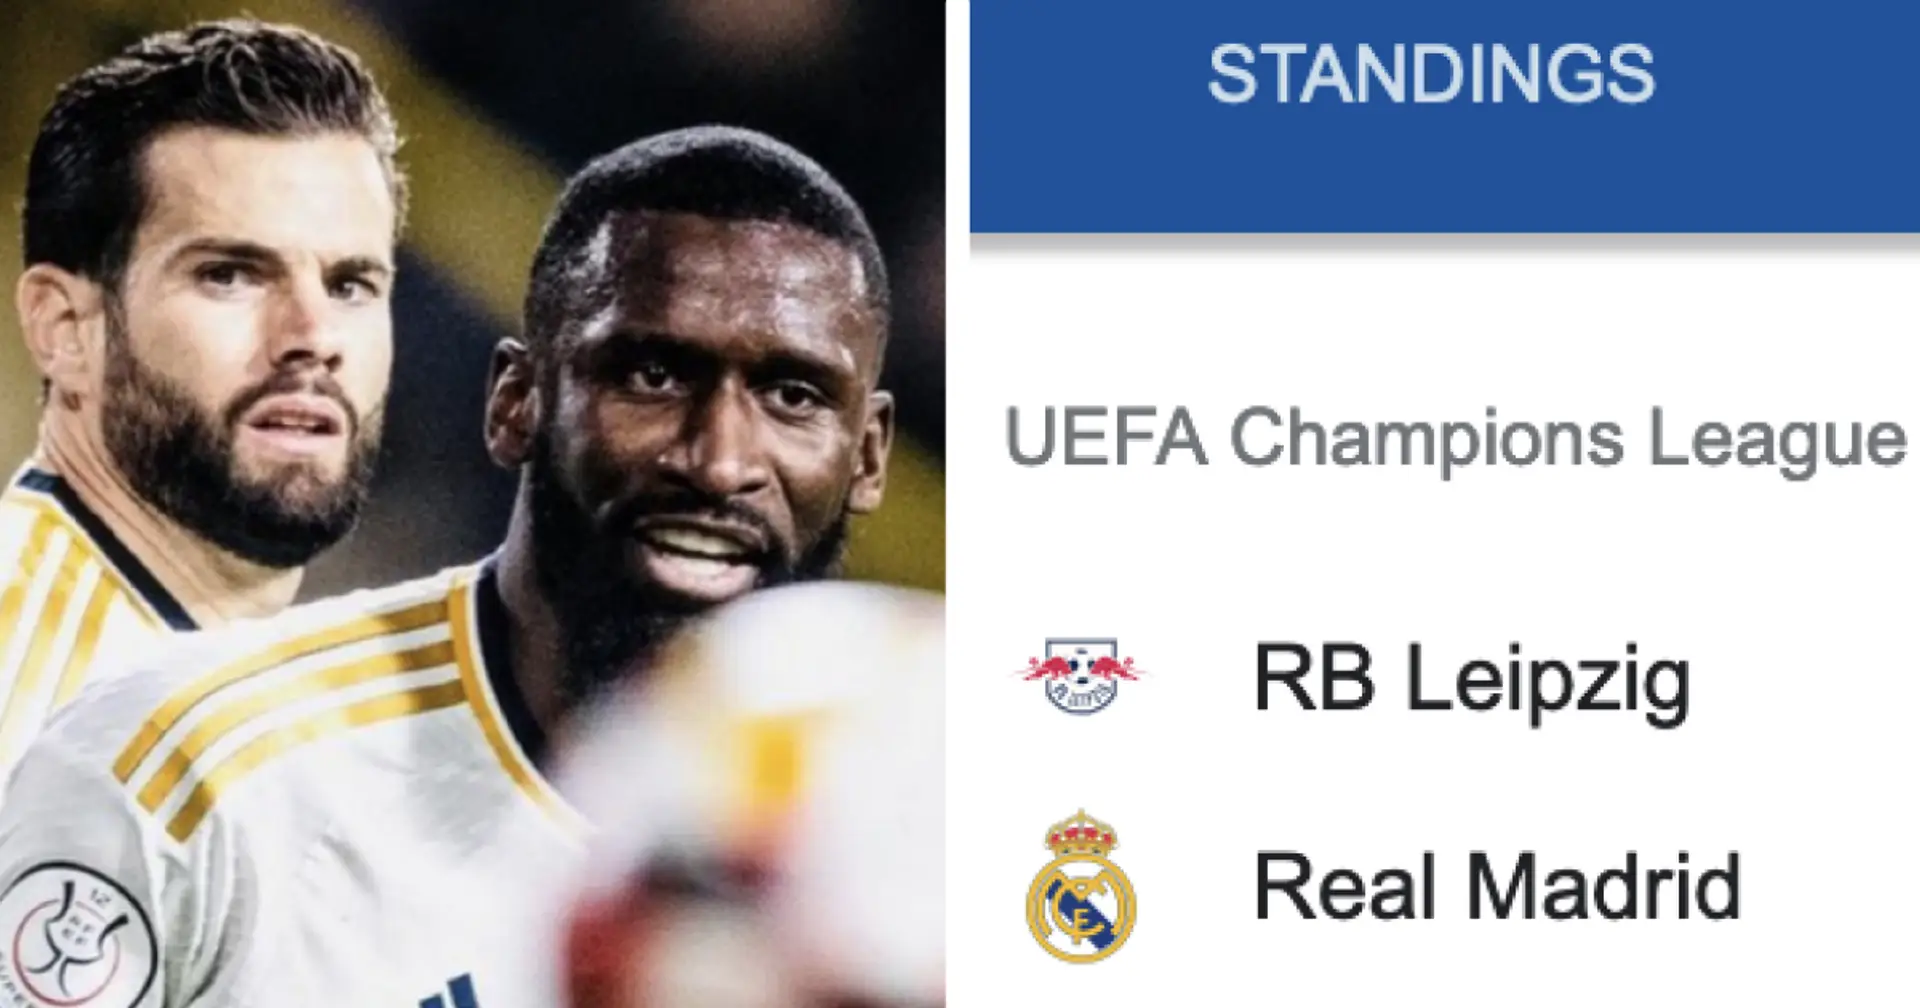 Werden die Innenverteidiger von Real Madrid im Achtelfinale der Champions League überhaupt zur Verfügung stehen?